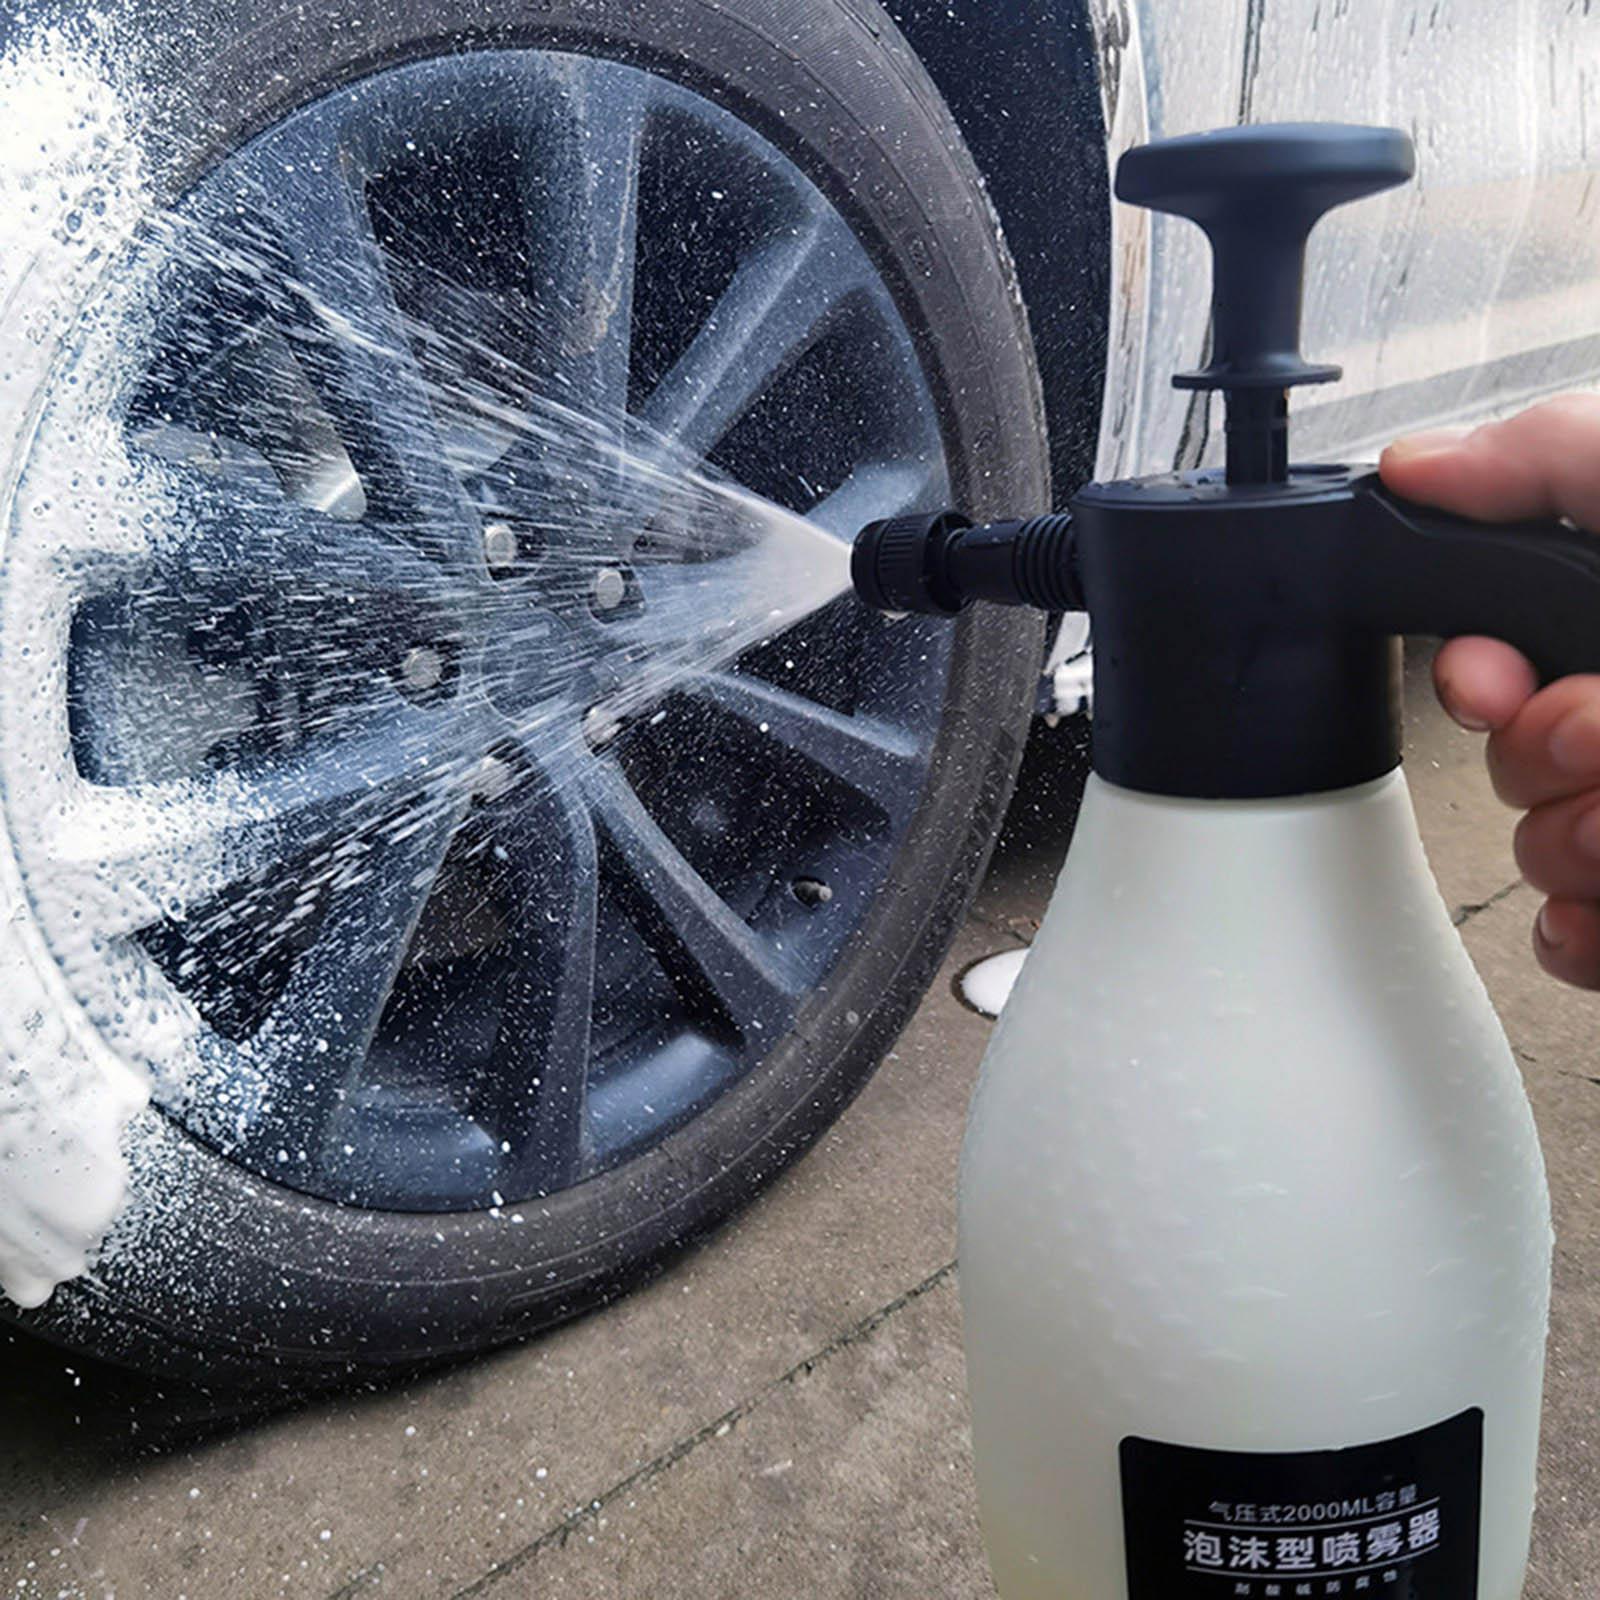 Car Wash Sprayer Foam Lance Washer Pump Sprayer Fit for Household Garden